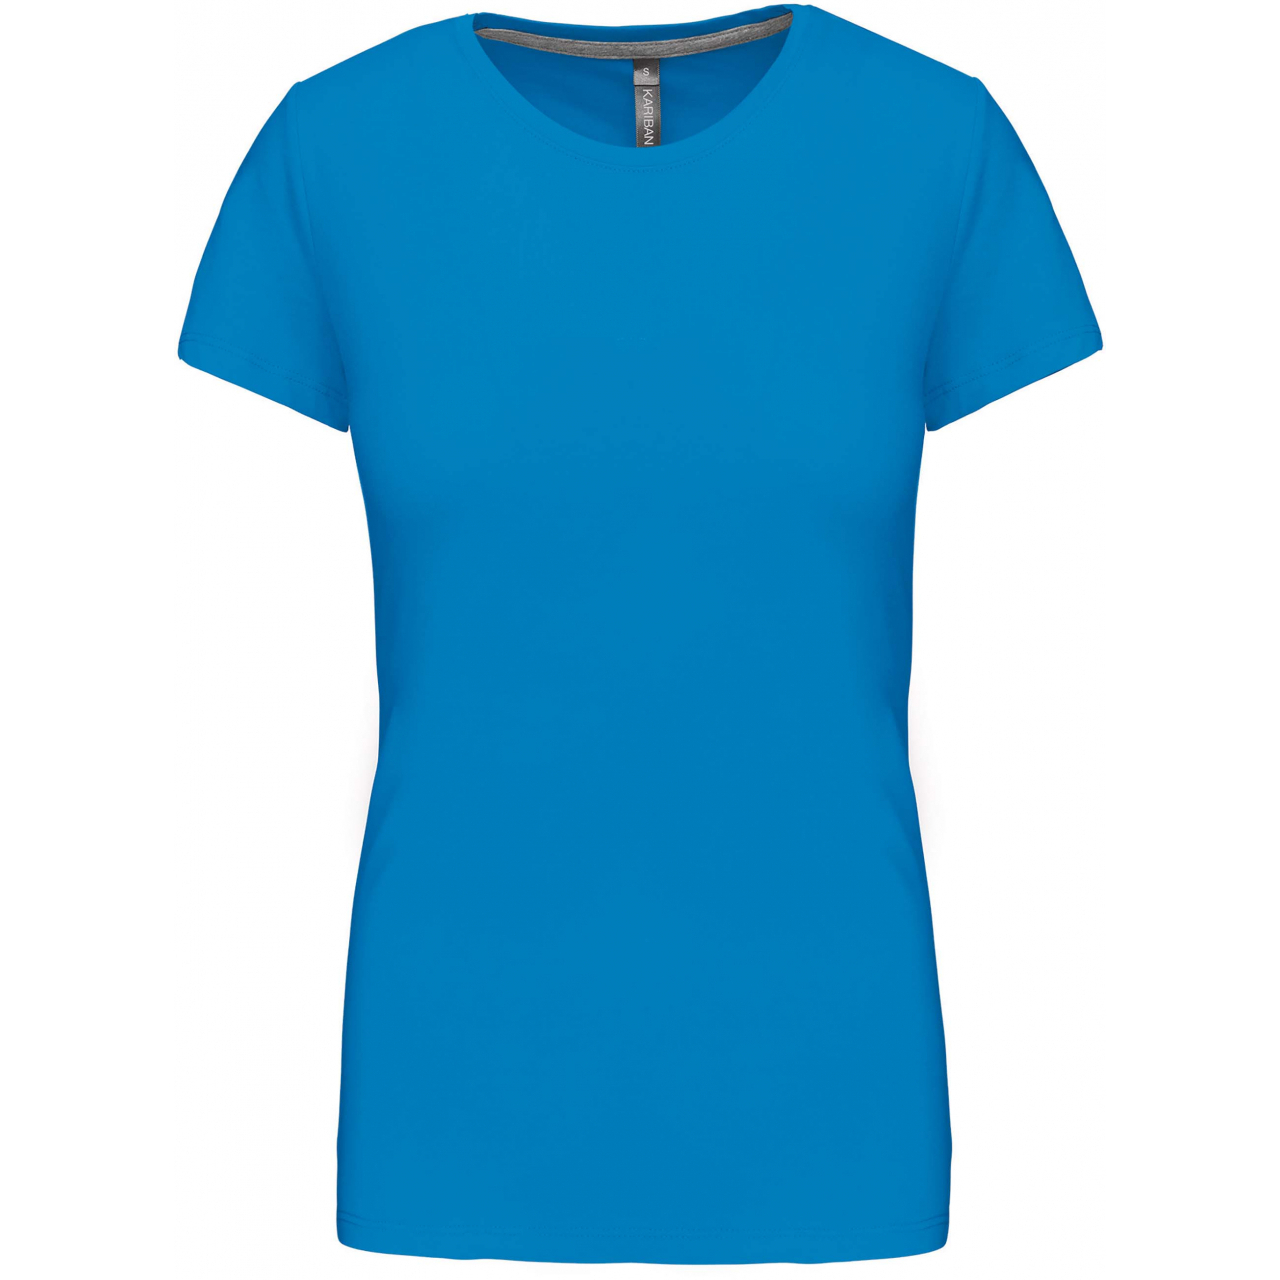 Dámské tričko Kariban s krátkým rukávem - středně modré, S